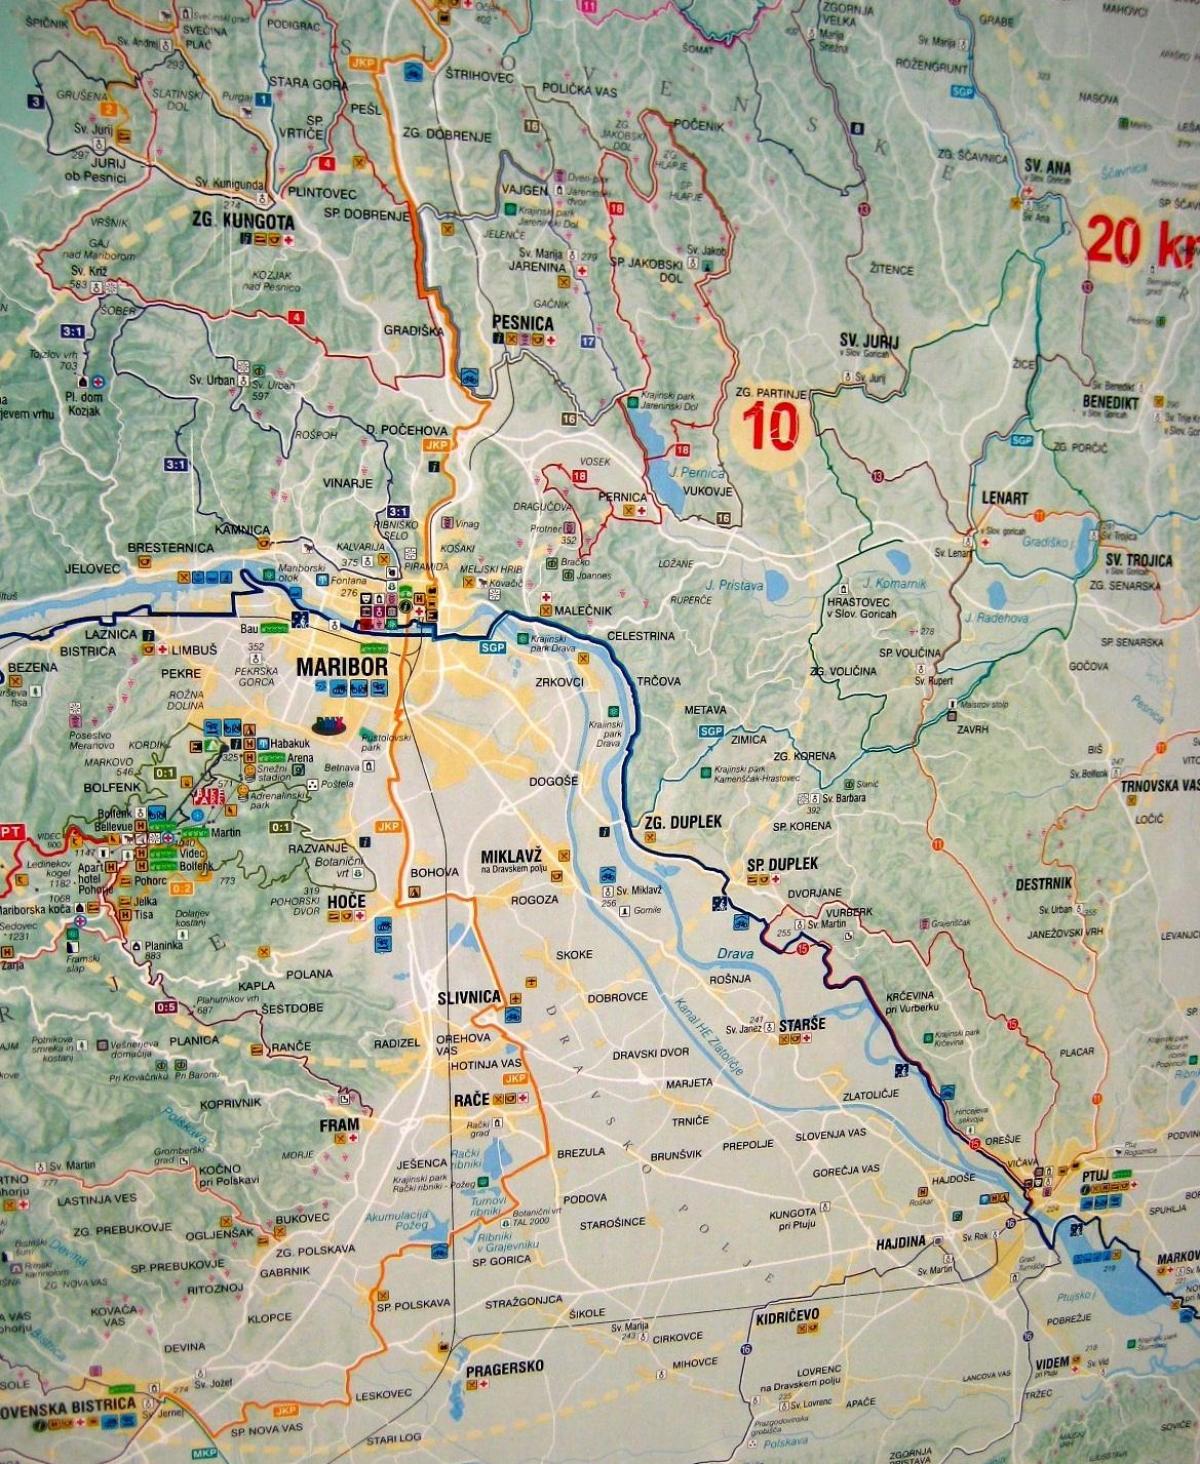 کا نقشہ کیمپنگ سلووینیا